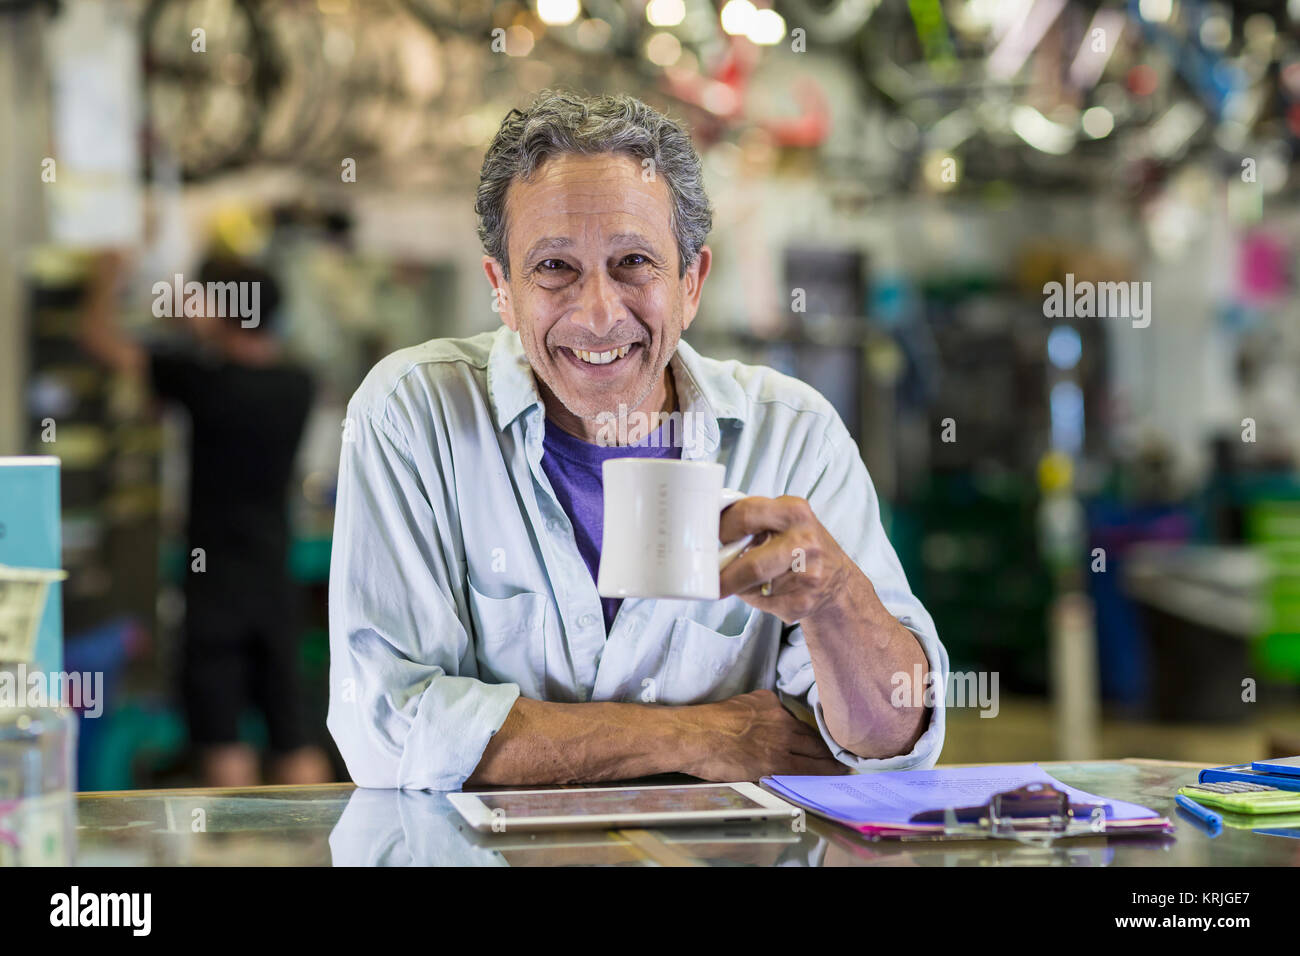 Retrato del hombre caucásico sonriente bebiendo café en la tienda de bicicletas Foto de stock